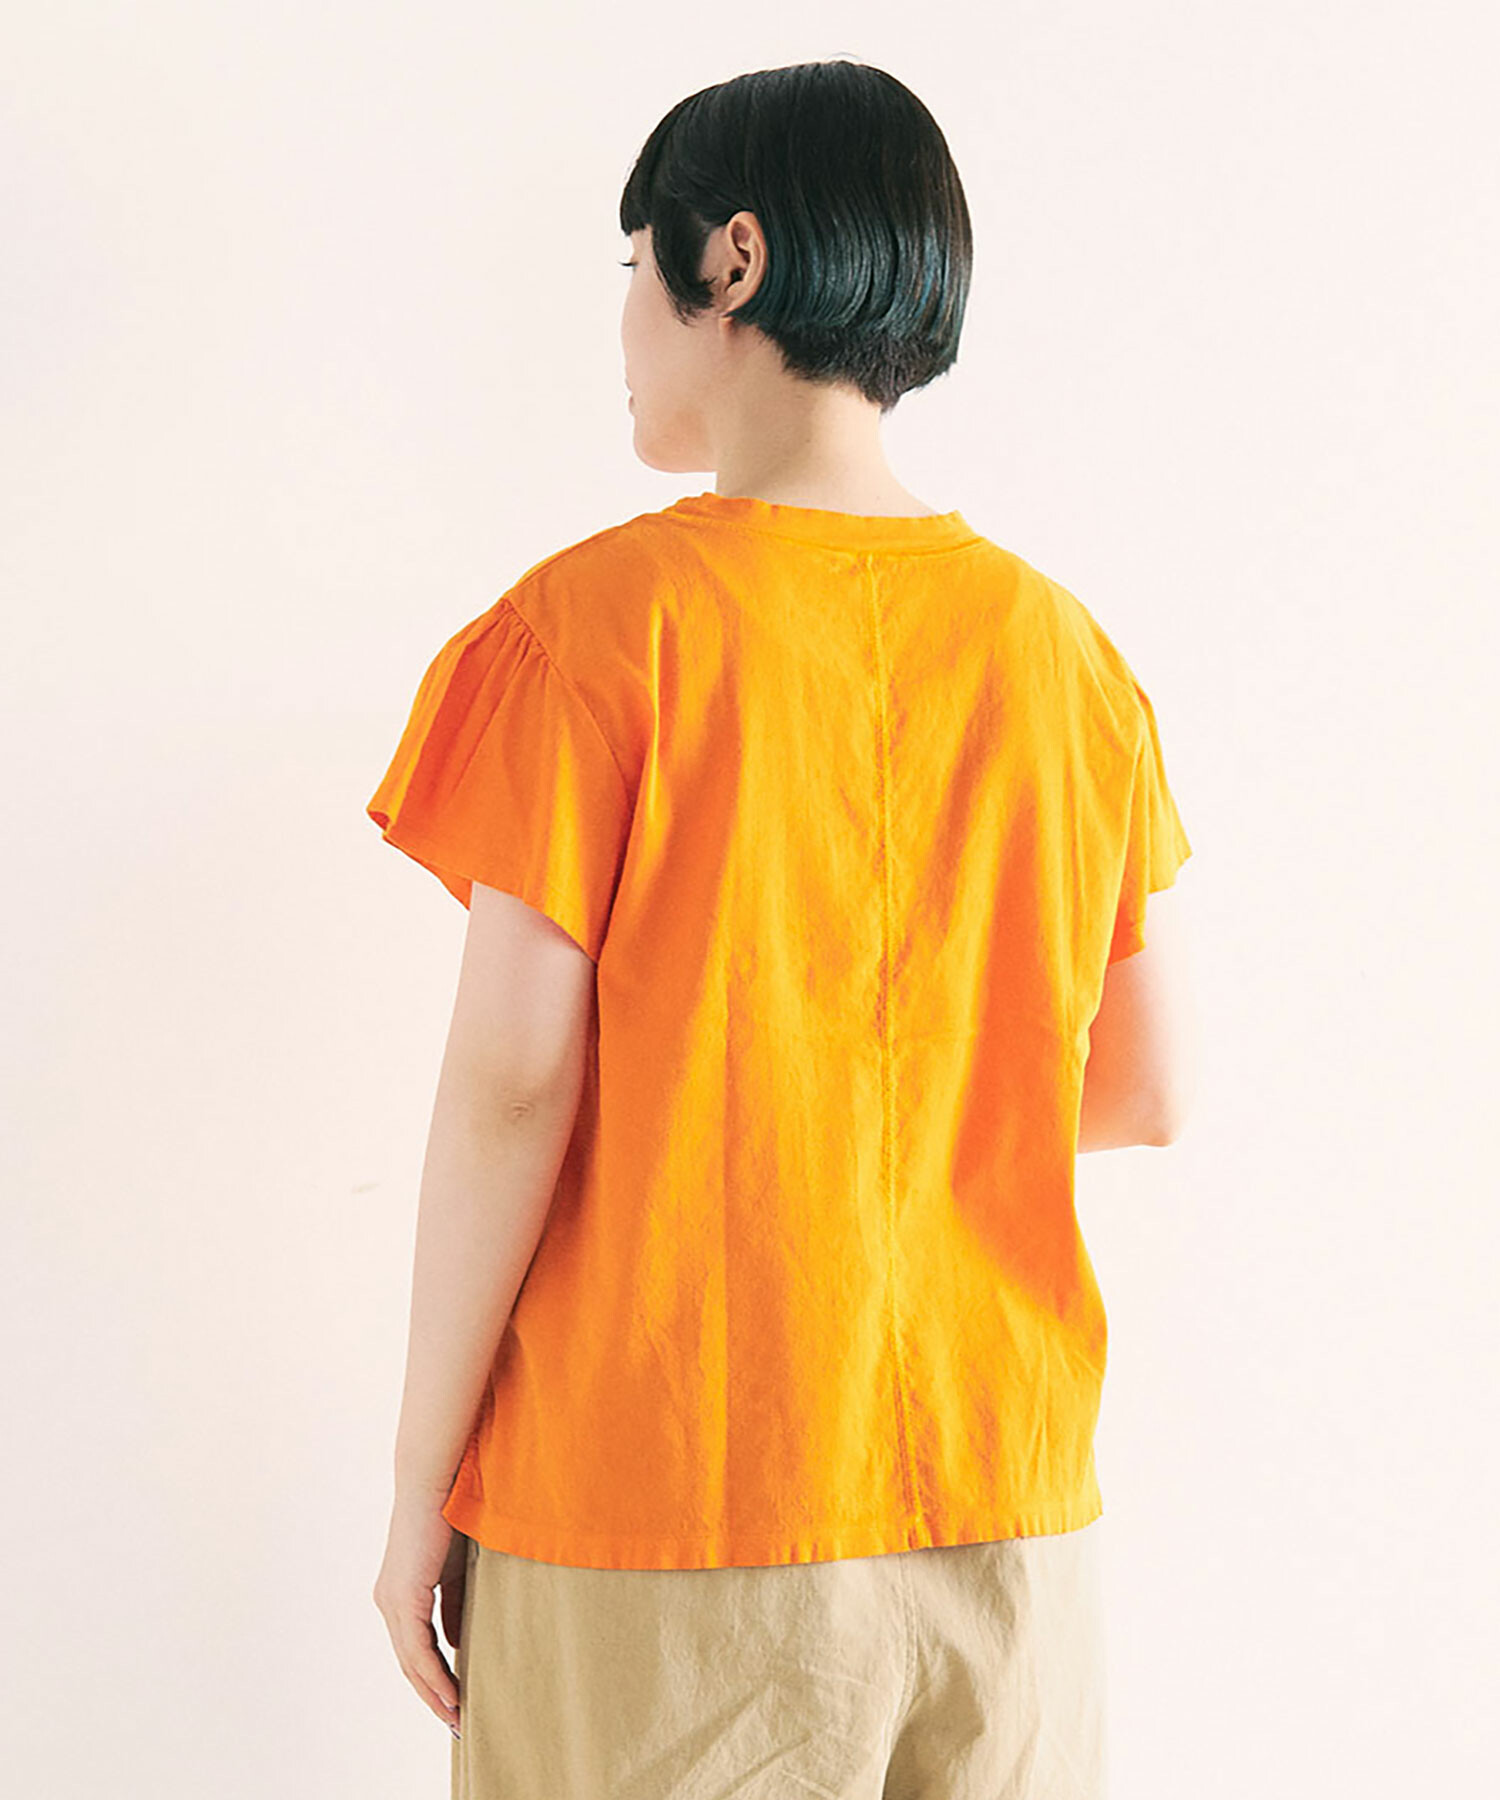 AMBIDEX Store 【予約販売】○CHIJIMI T-シャツ(F オレンジ): FLAT-cic